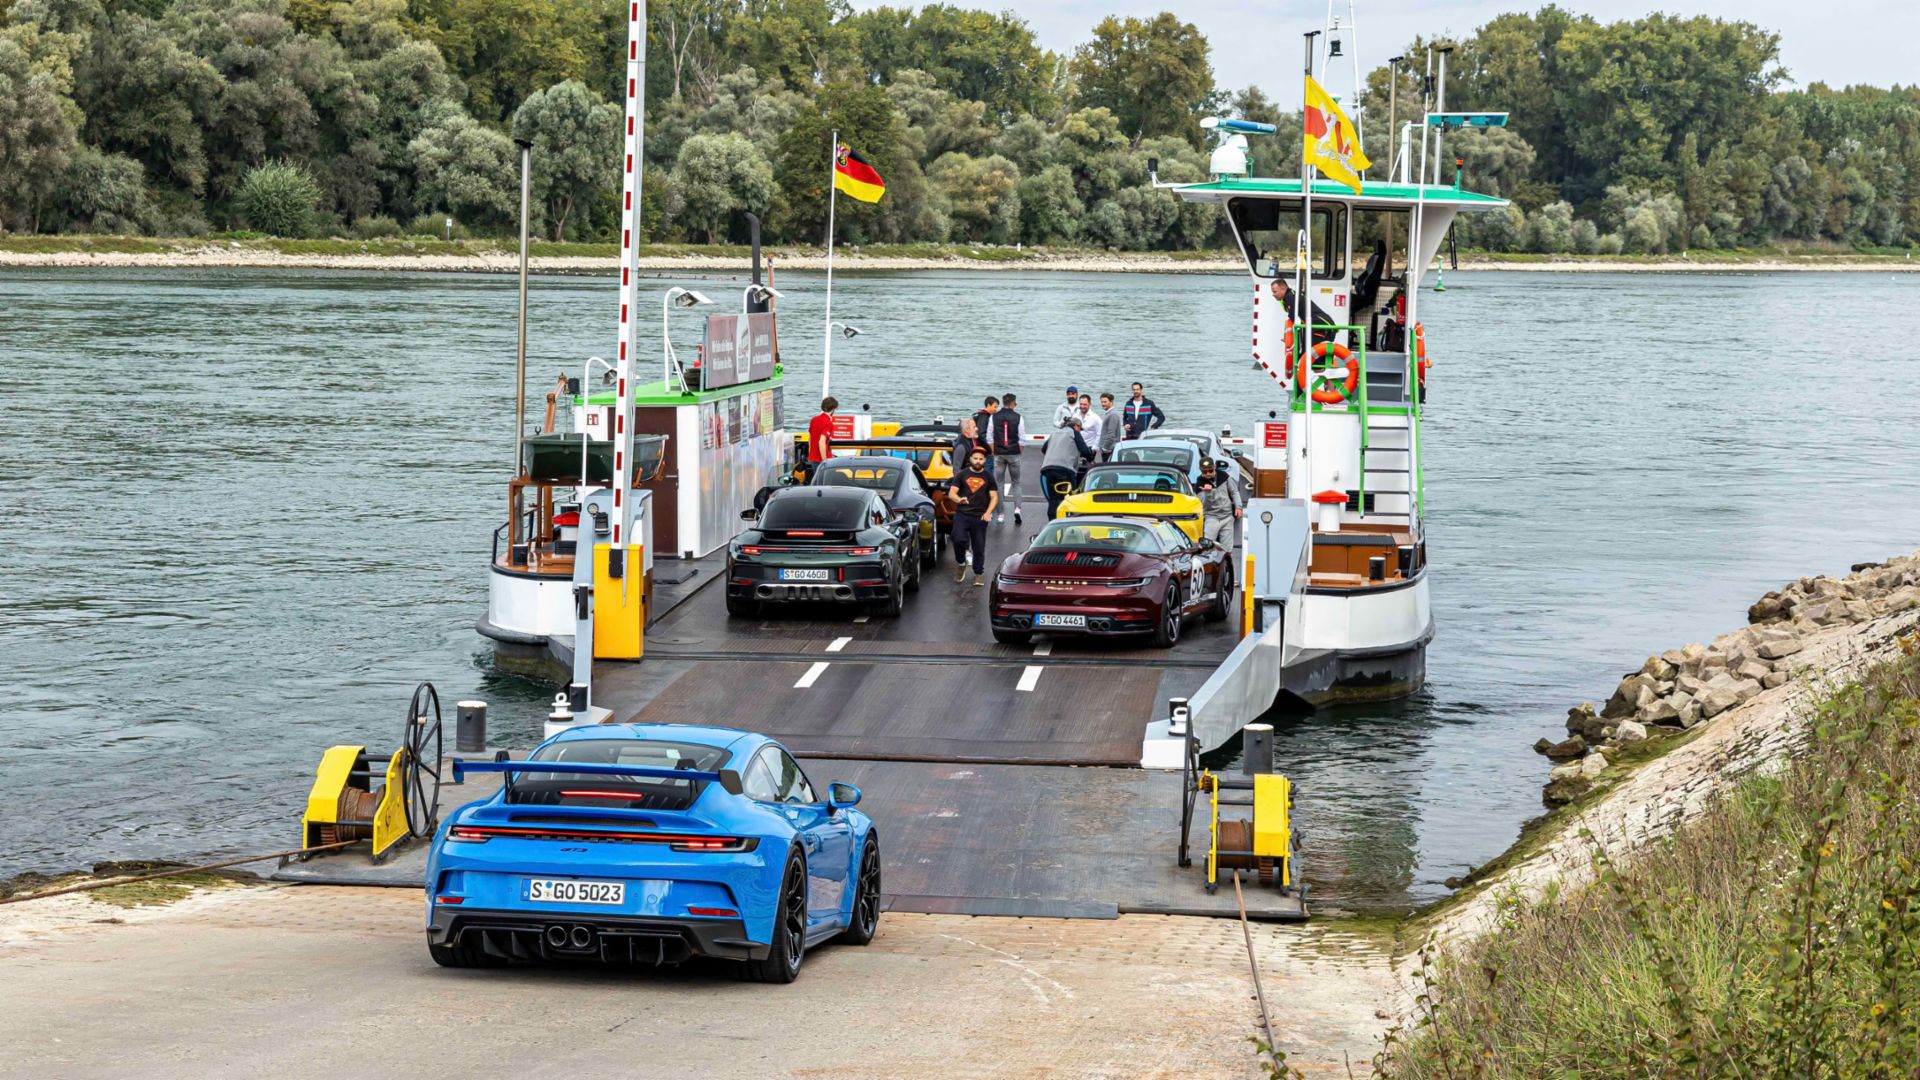 Νέες έκδοσεις της Porsche 911: Εξερευνώντας την επικηρυγμένη κληρονομιά του σπορ αυτοκινήτου
